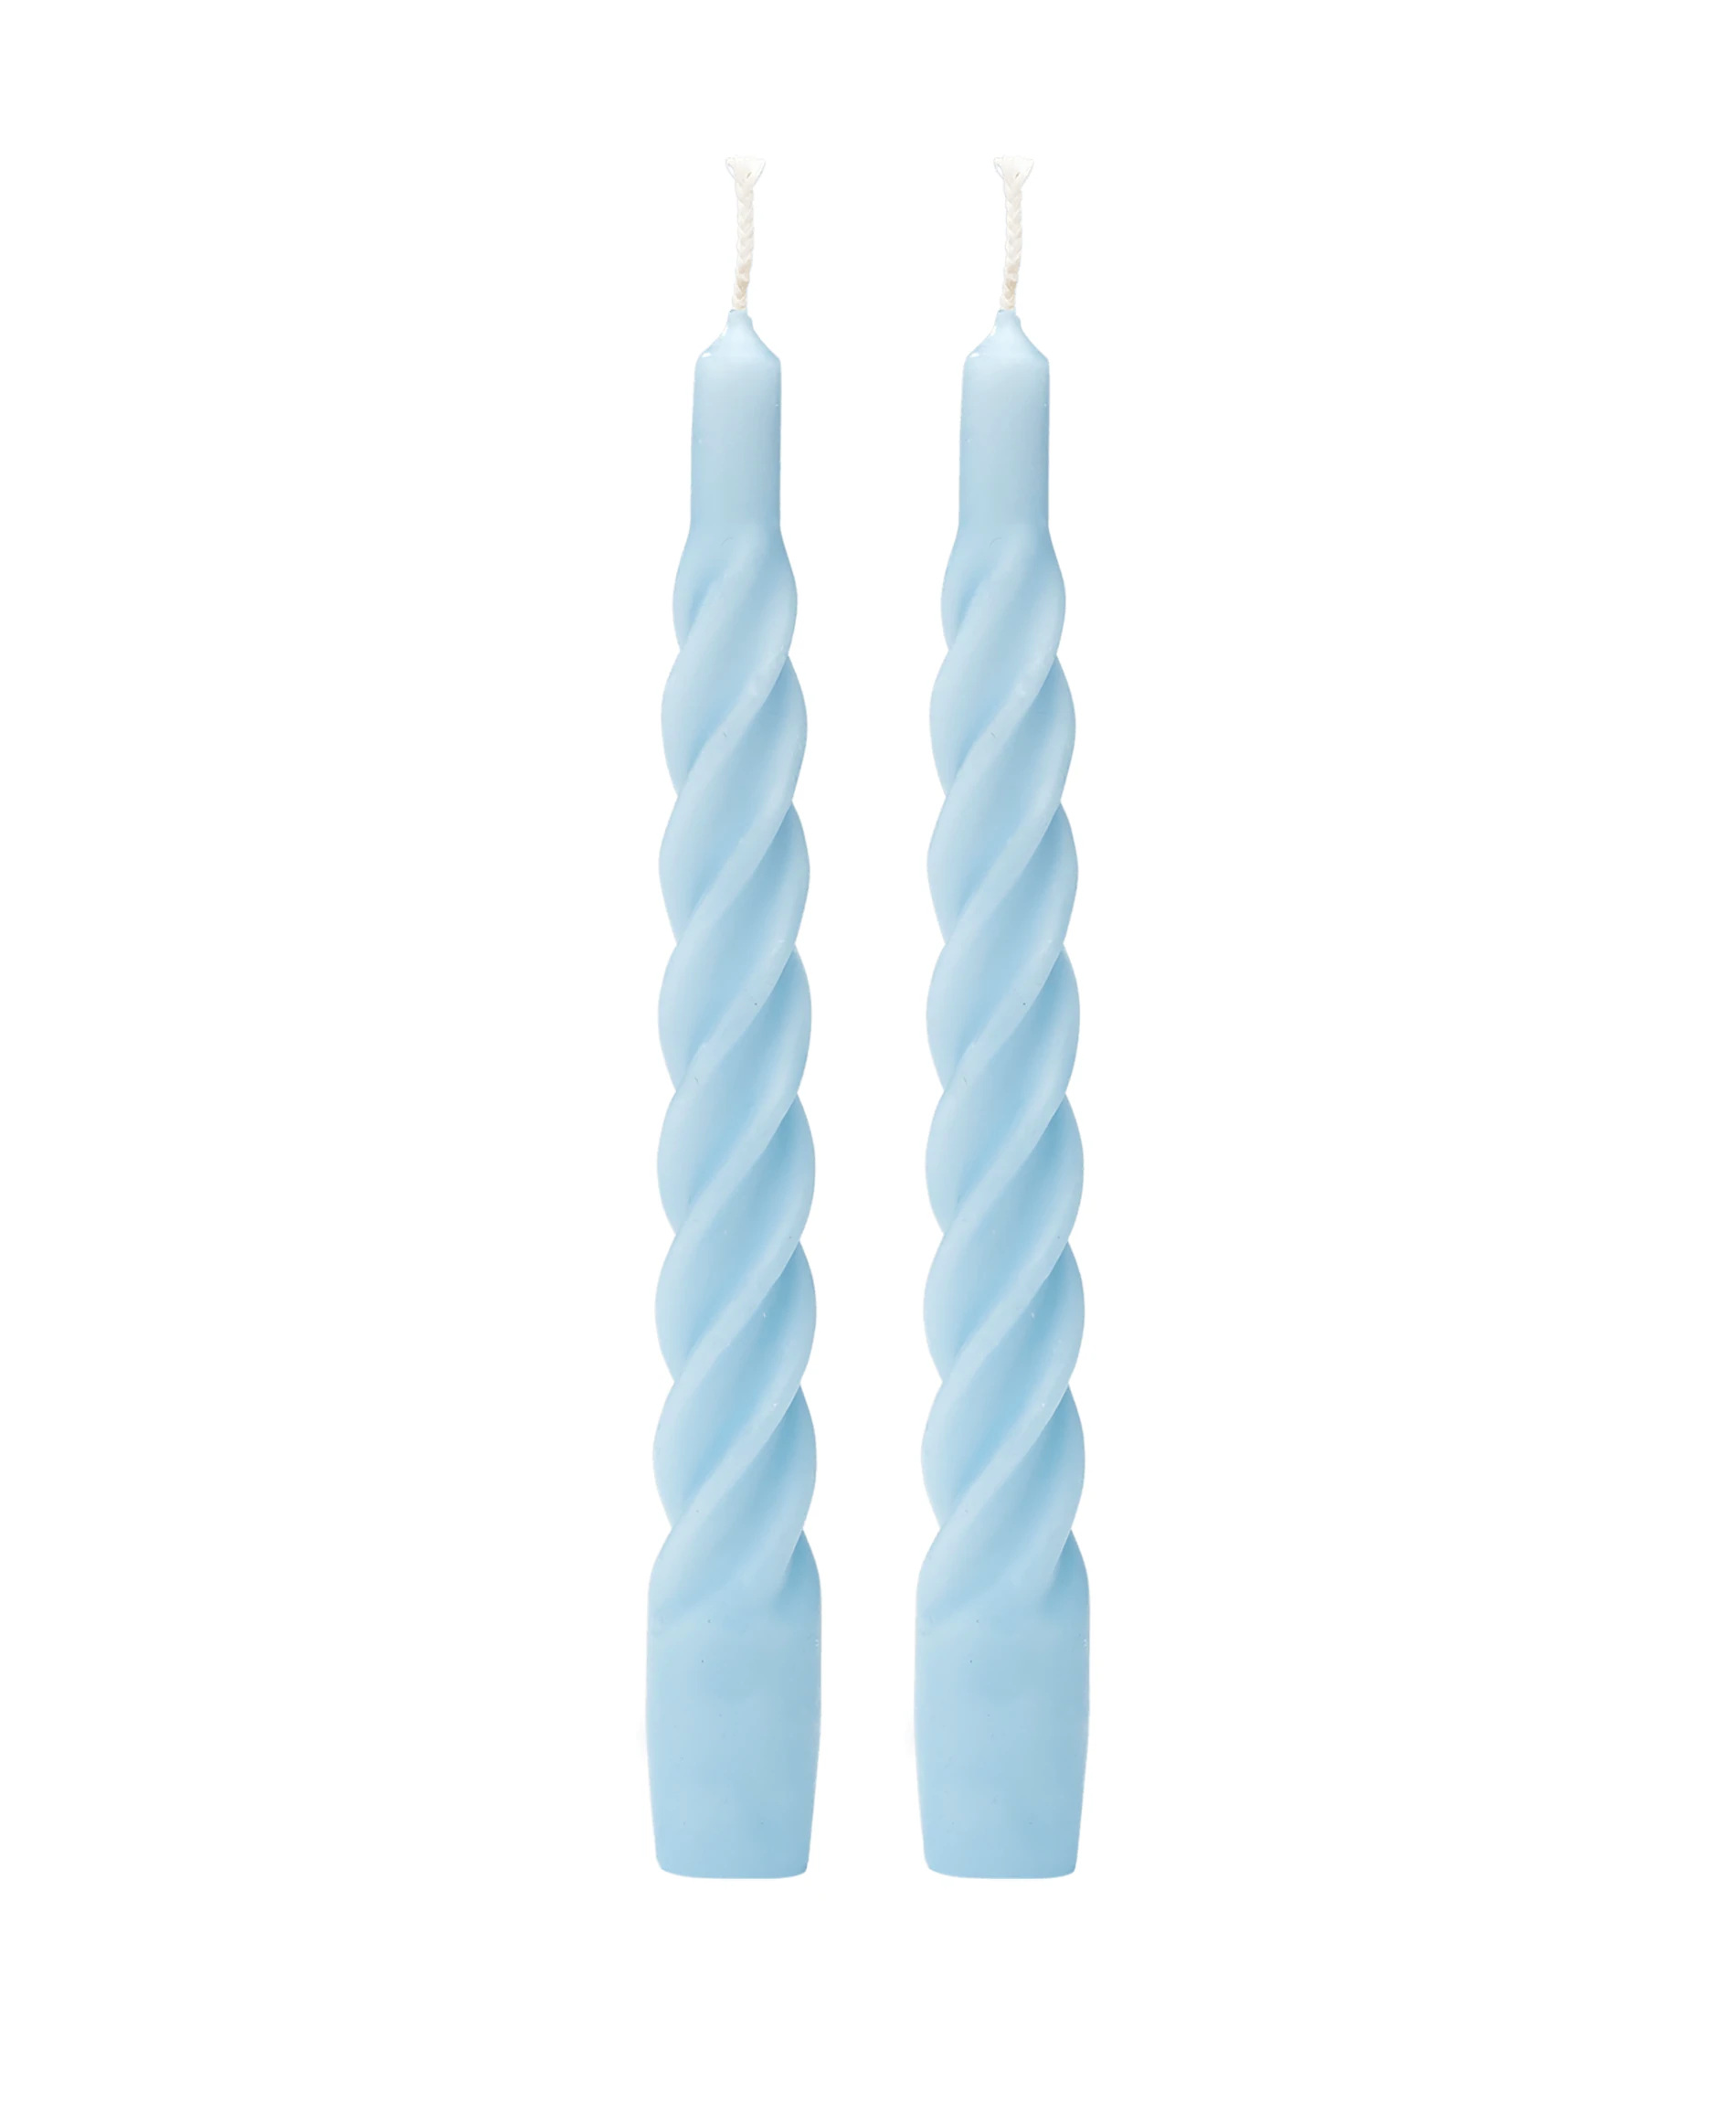 anna-nina-matt-light-blue-twisted-candles-set-of-2